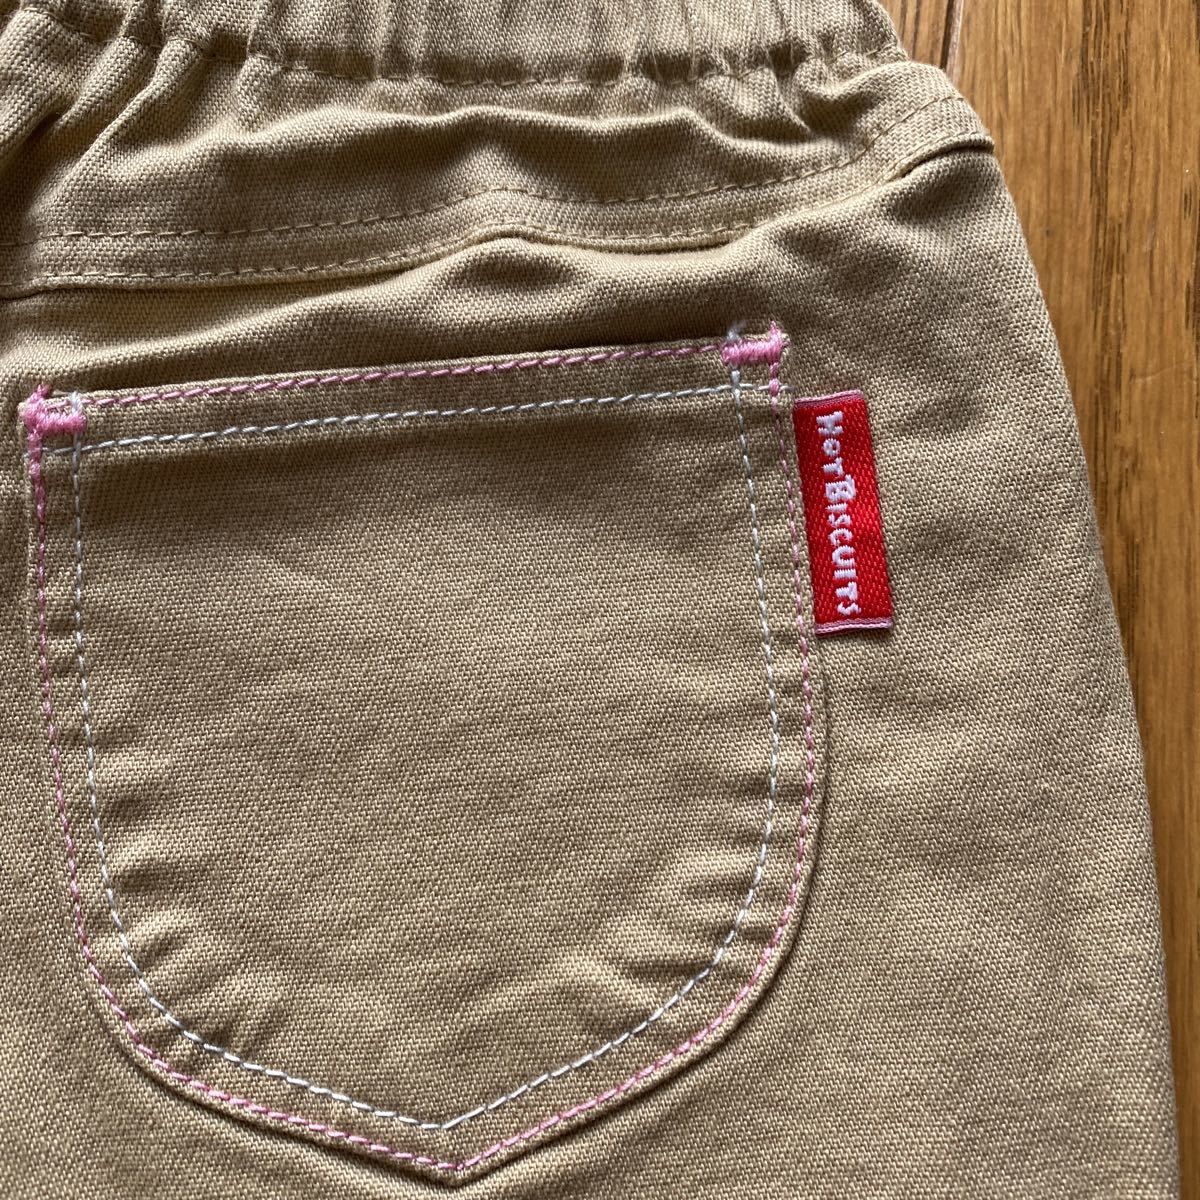 SALE джинсы праздник быстрое решение новый товар Miki House стрейч джинсы 110 бежевый 